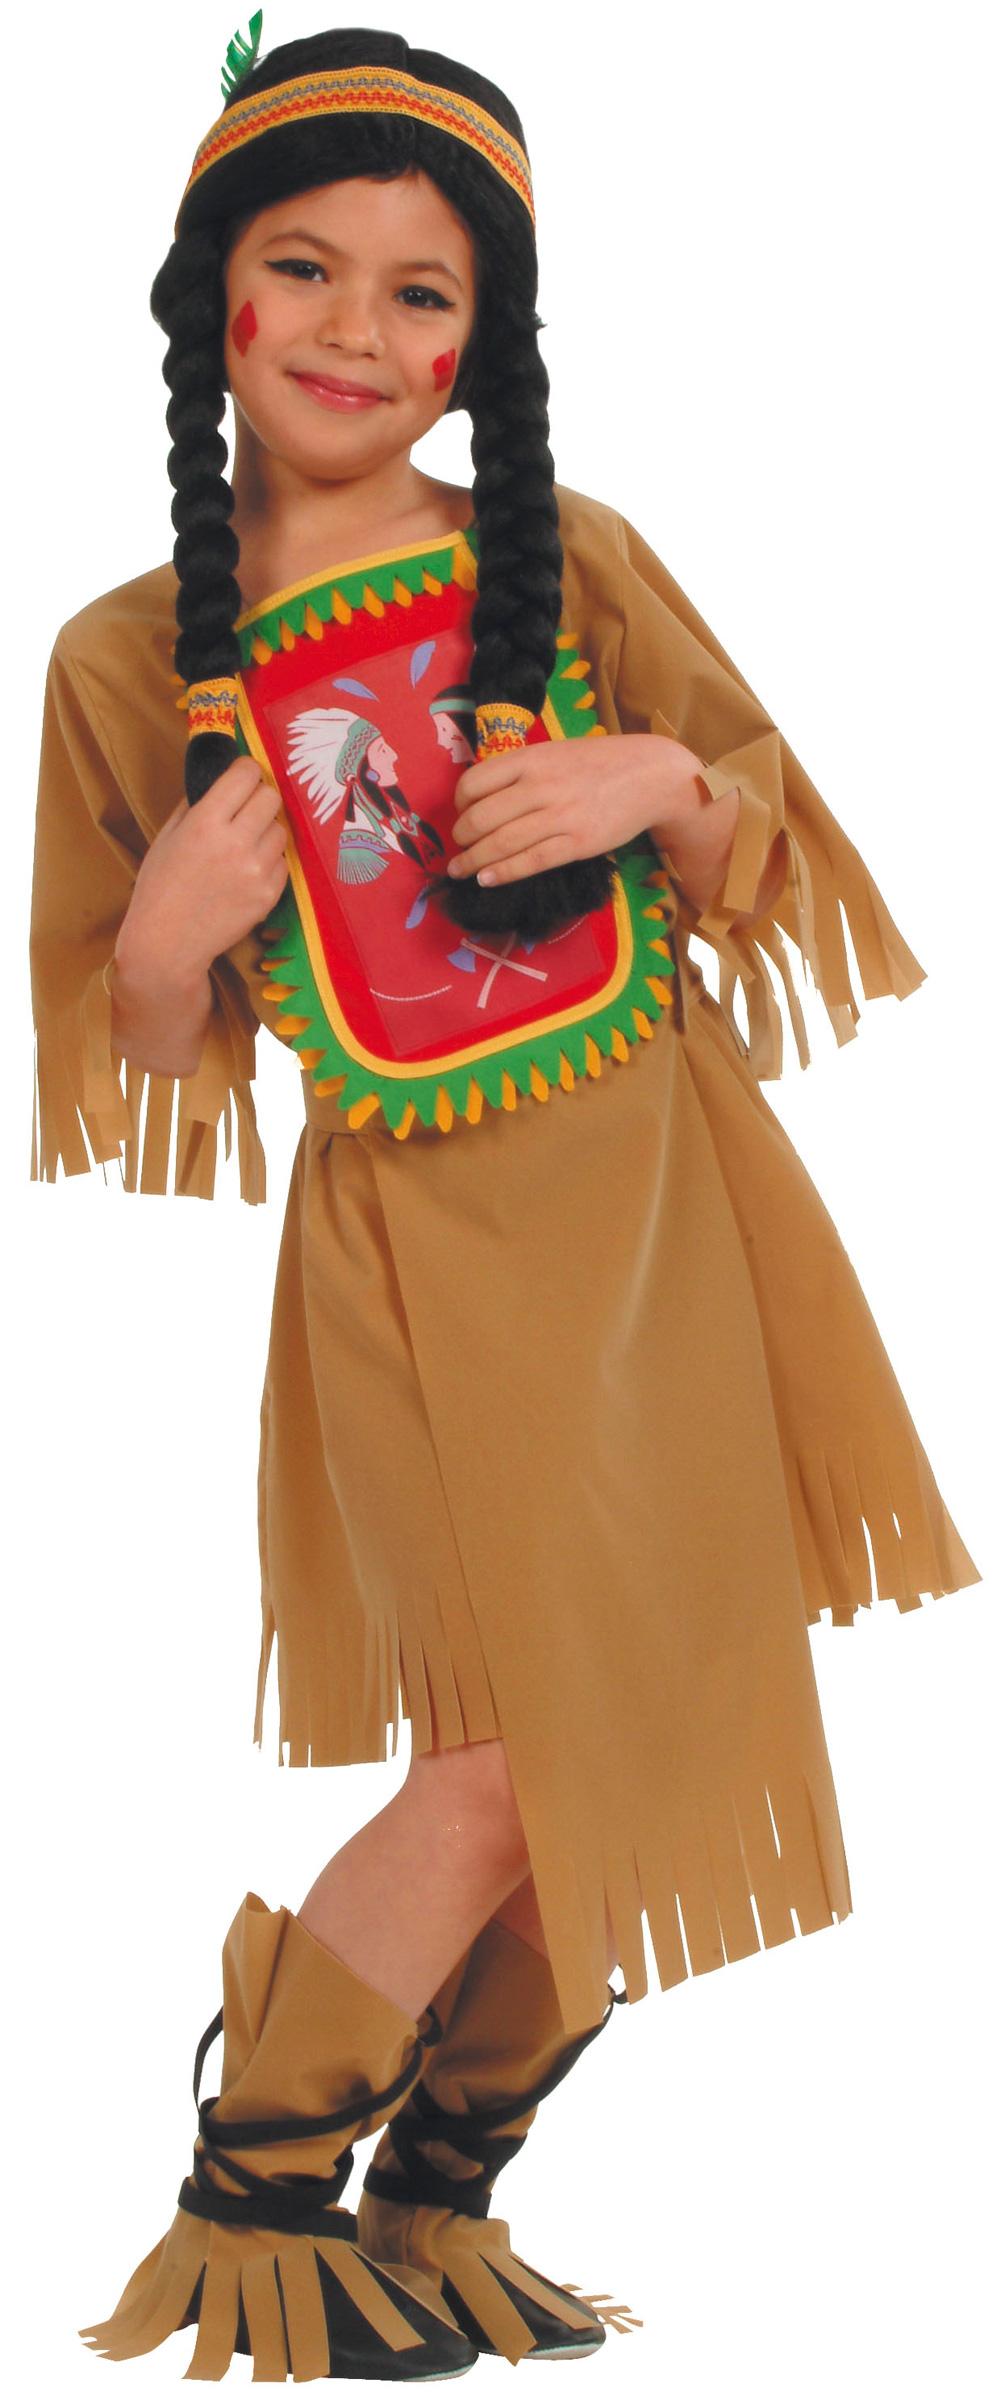 Foto Disfraz de india sioux para niña foto 133159